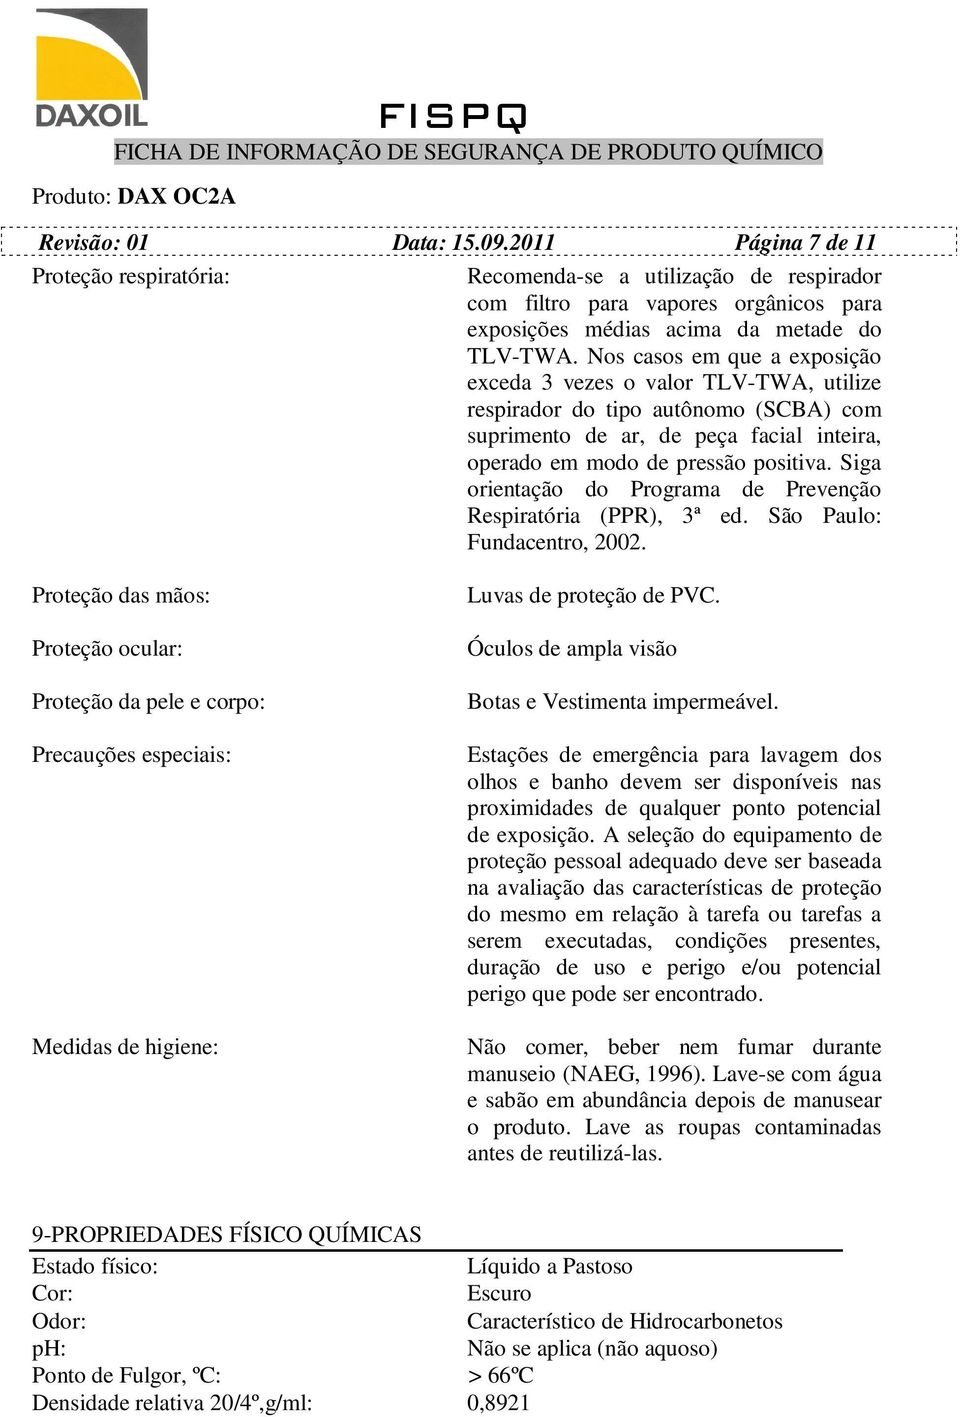 Siga orientação do Programa de Prevenção Respiratória (PPR), 3ª ed. São Paulo: Fundacentro, 2002.